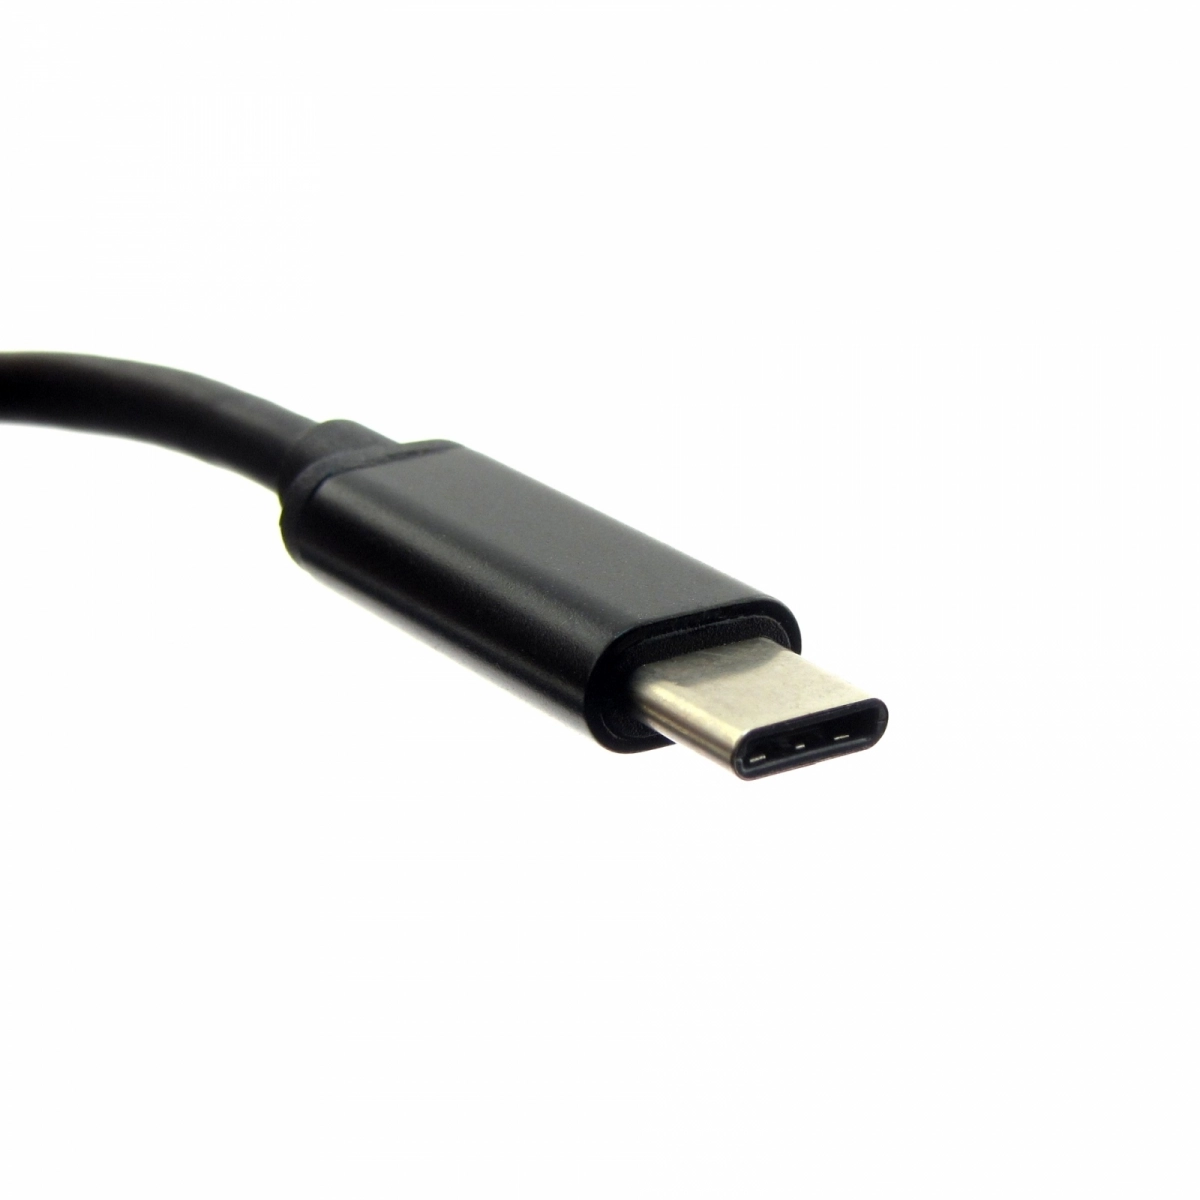 MTXtec 65W USB-C Netzteil für Tablet, Smartphone, Ultrabook, Macbook, Chromebook von Acer, Apple, Dell, HP, LG, Nokia, Samsung